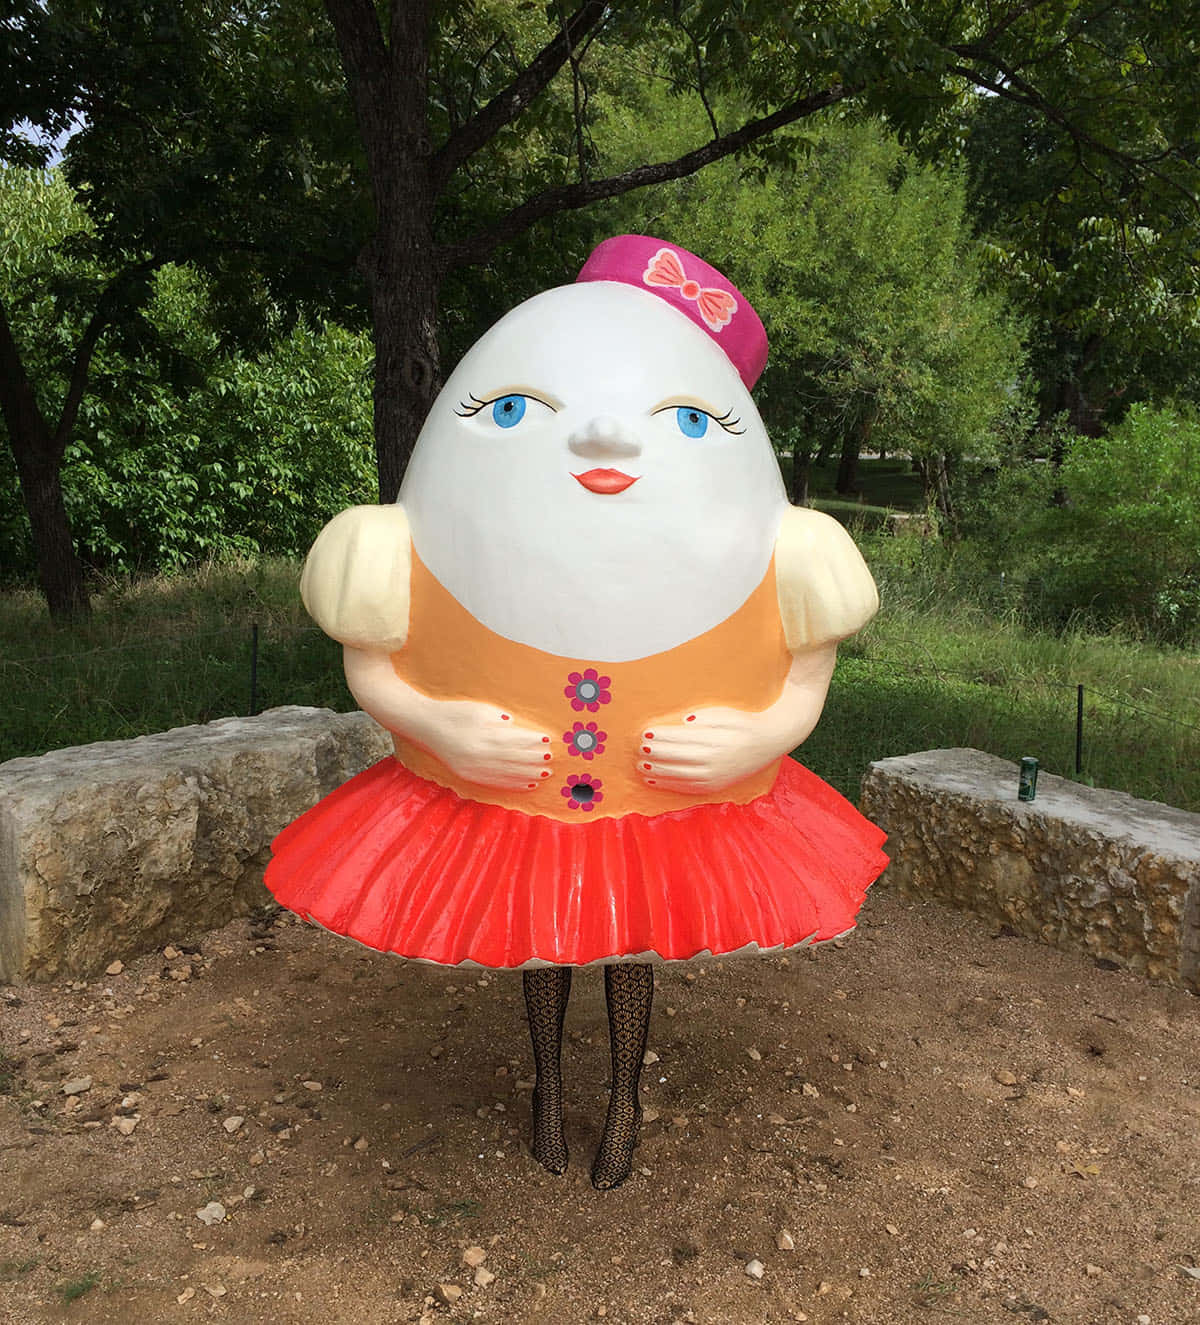 Imagende Una Estatua De La Chica Humpty Dumpty